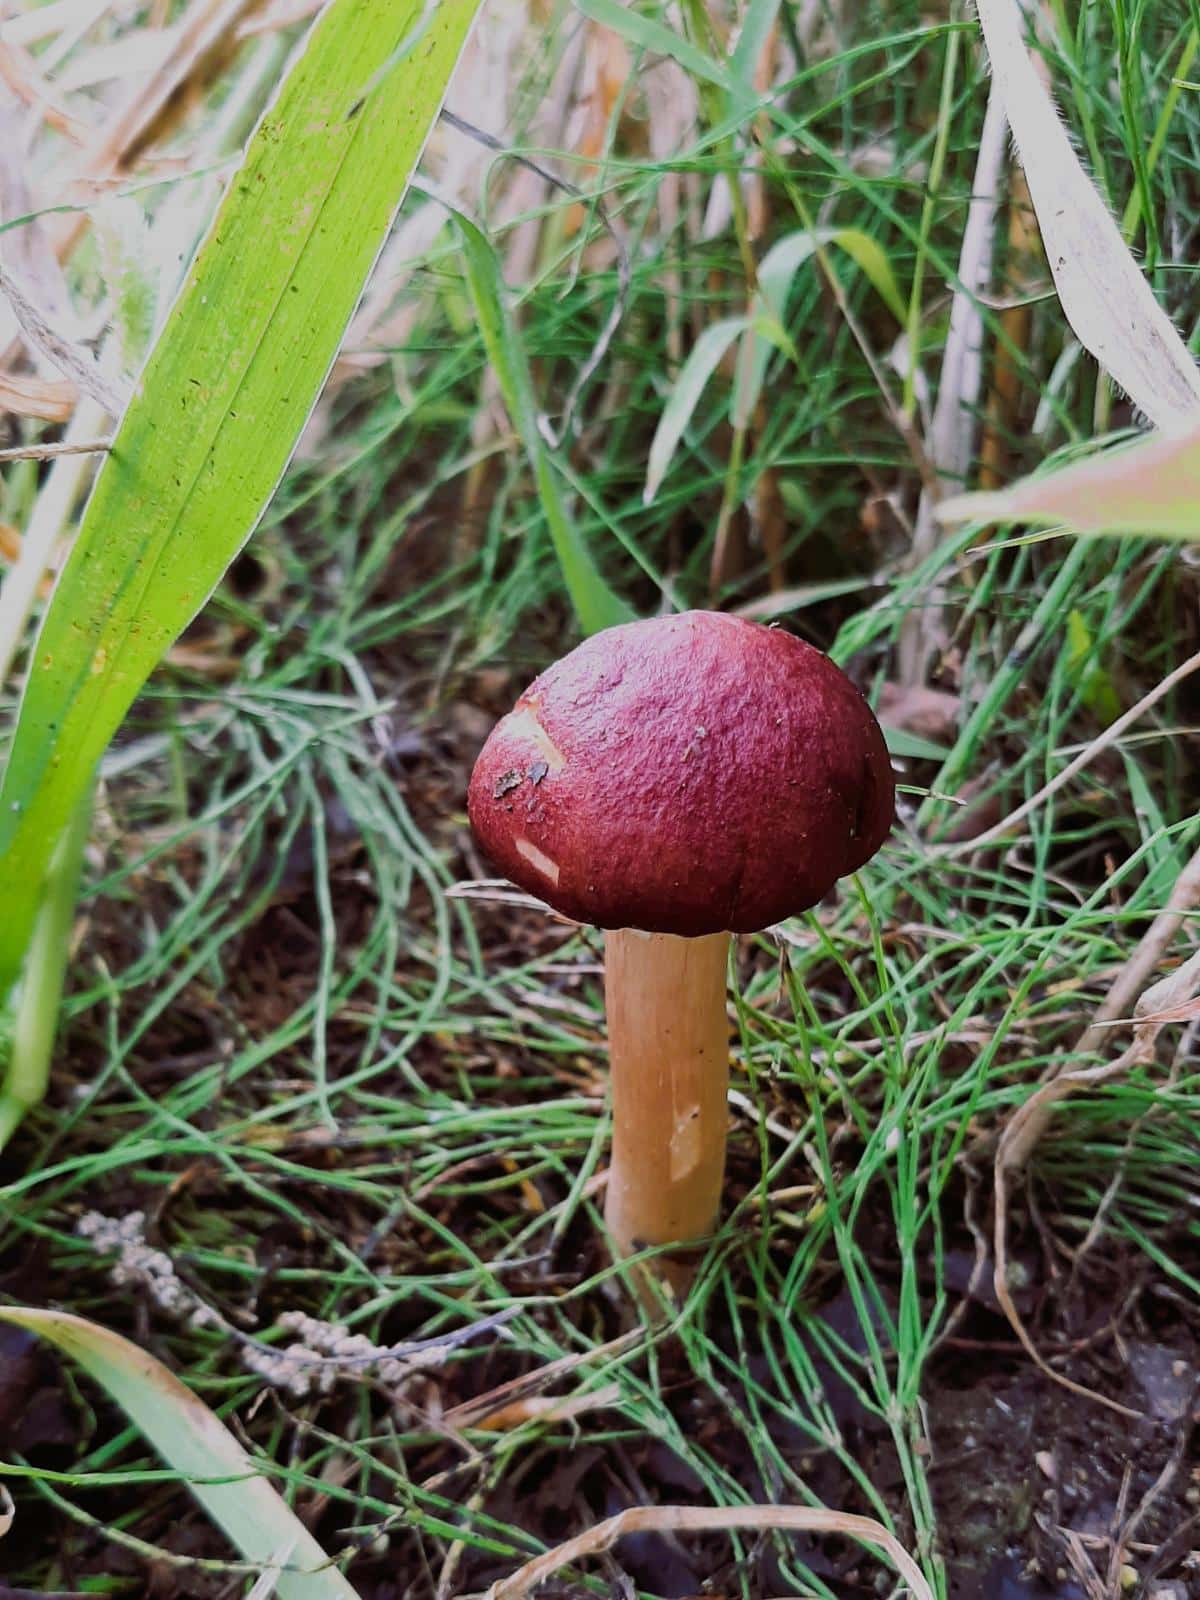 wine cap mushroom